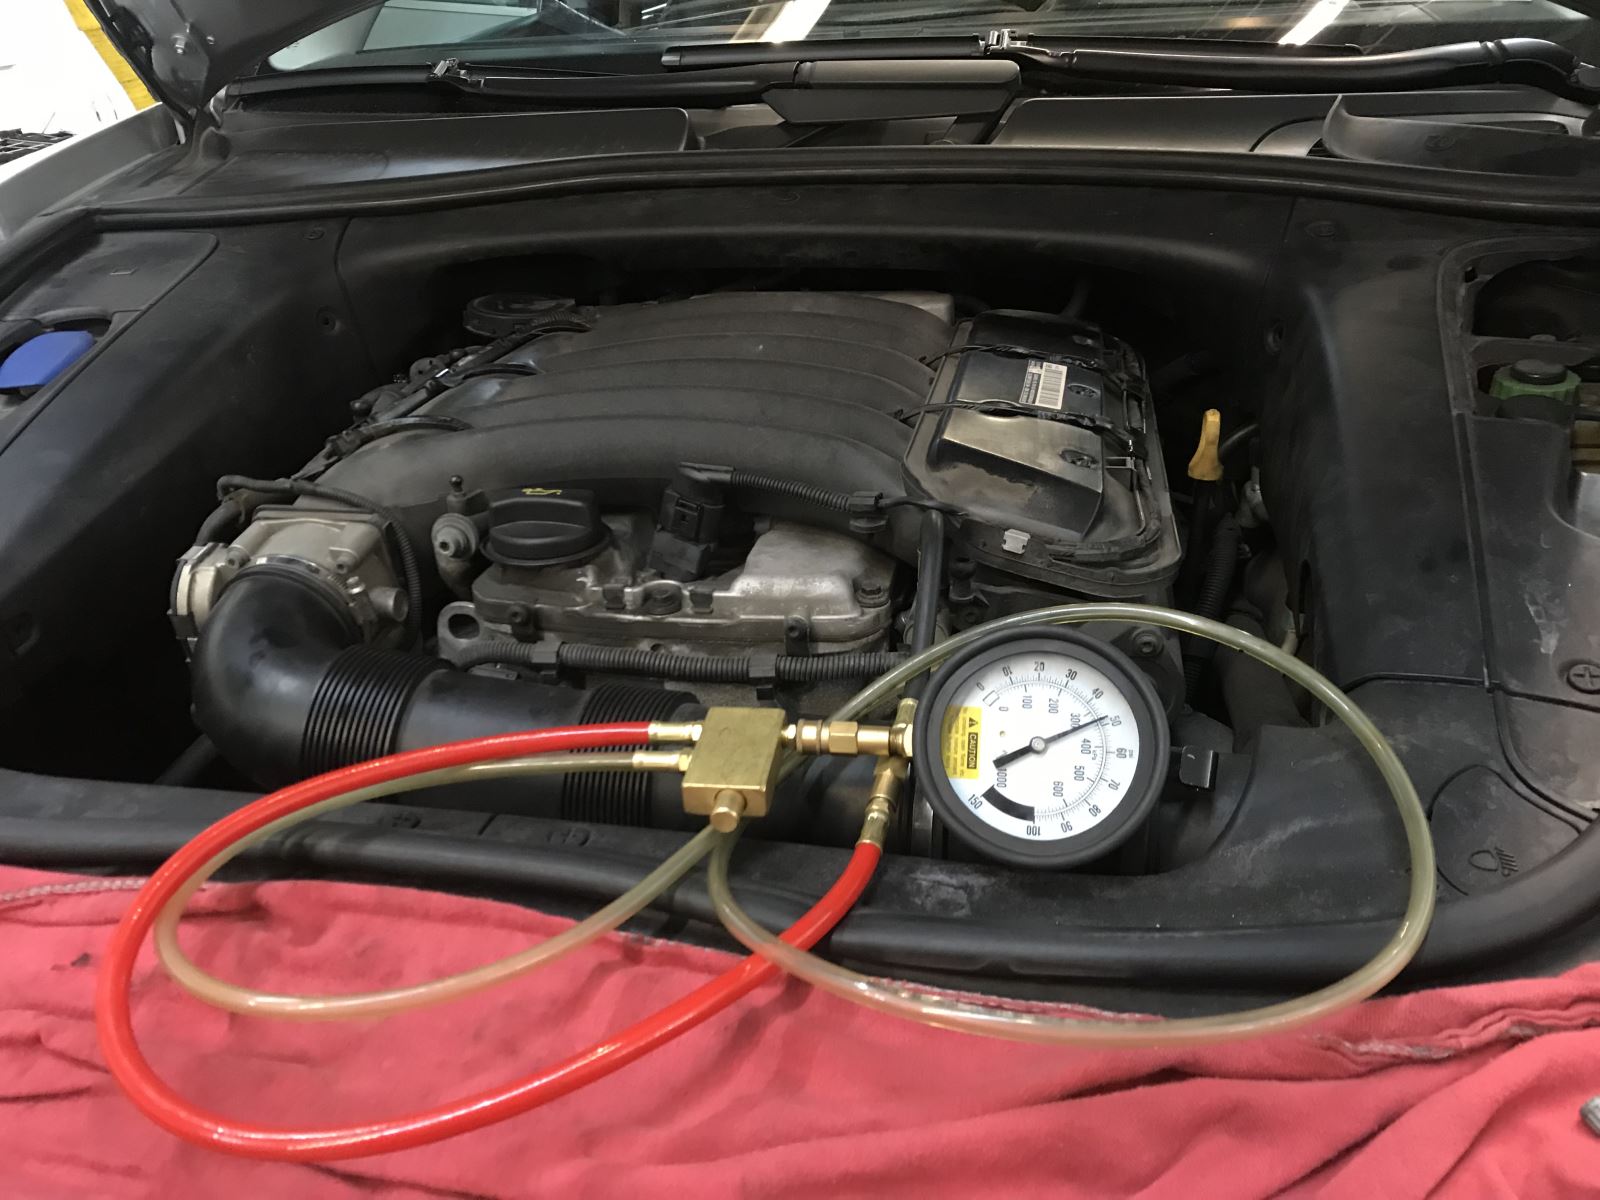 fuel filter replacement, djforeignauto, Minneapolis, MN 55418